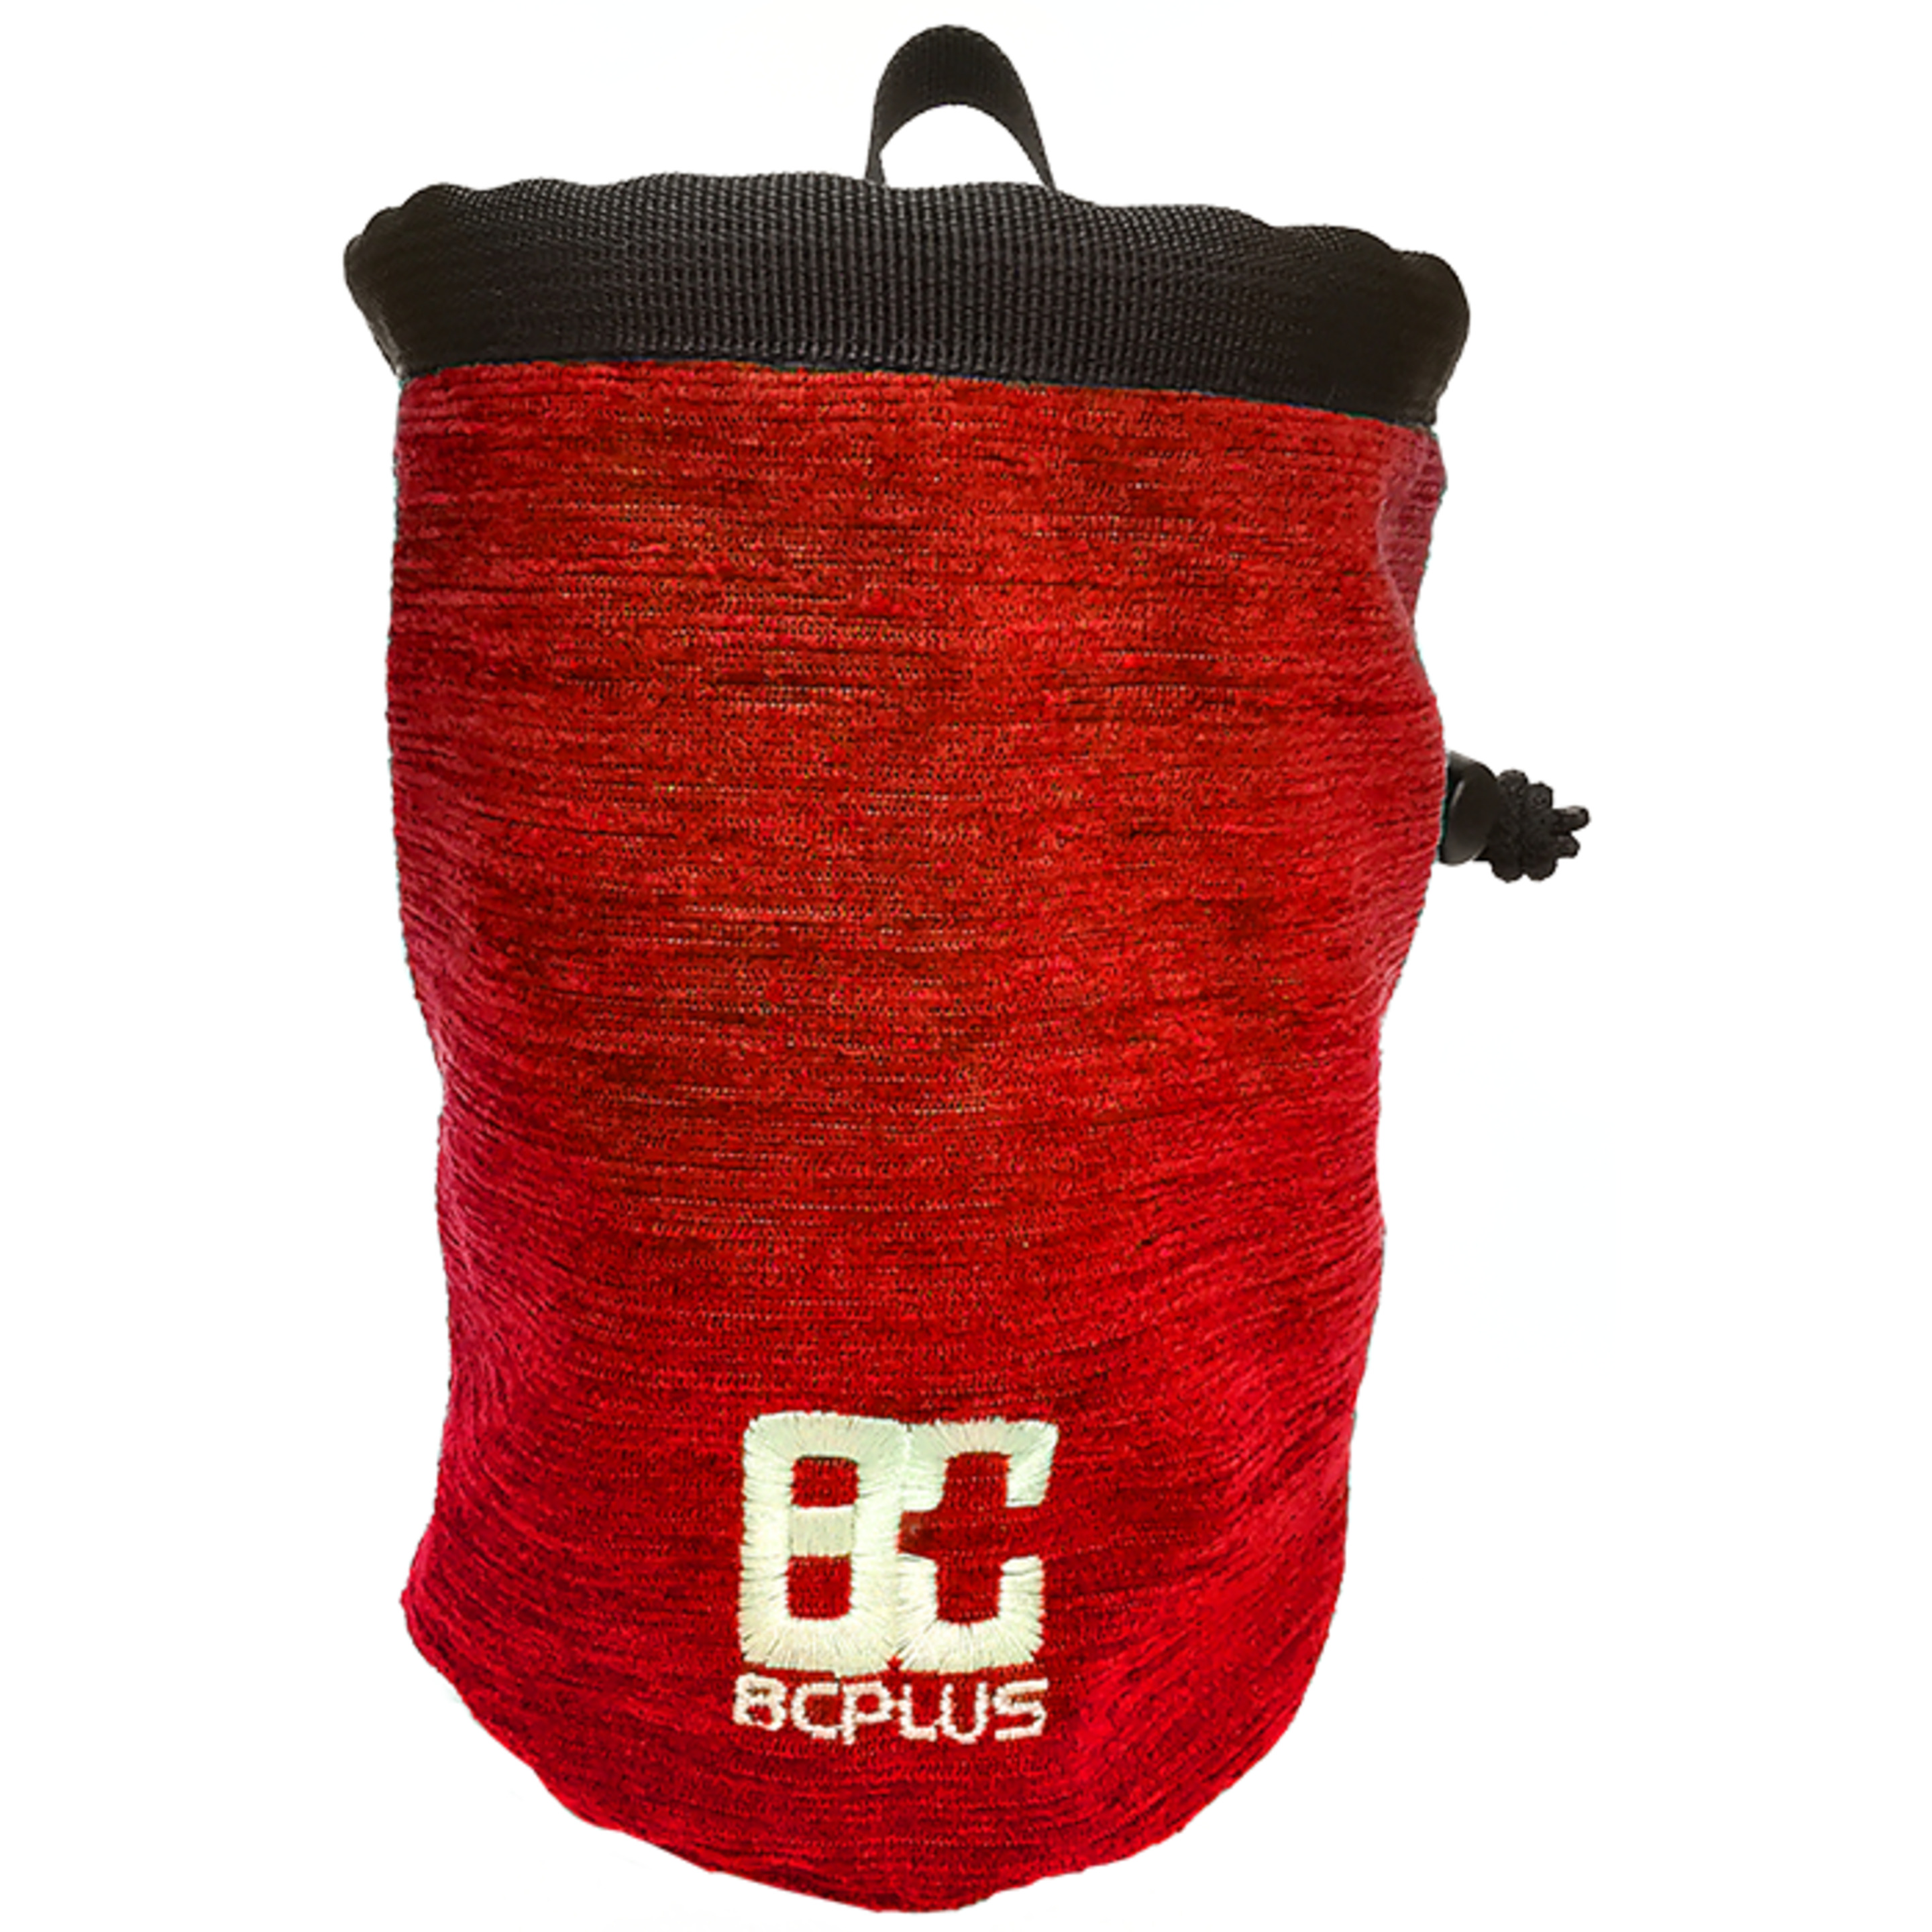 Bolsa De Magnesio Con Cinturón Amazon Rojo 8cplus - rojo - Chalk 8cplus  MKP